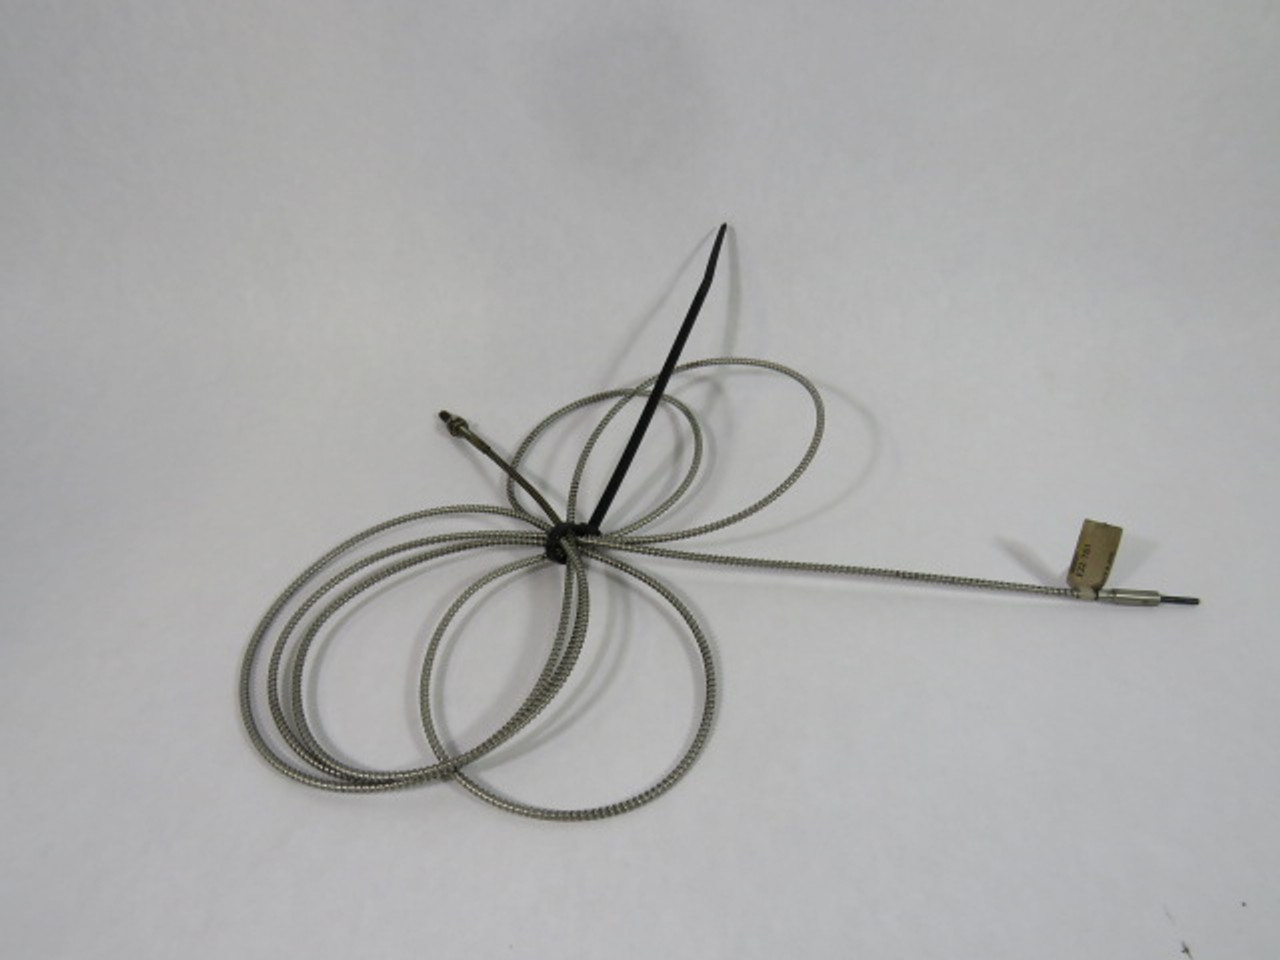 Omron E32-T61 Fiber Optic Sensor Cable USED